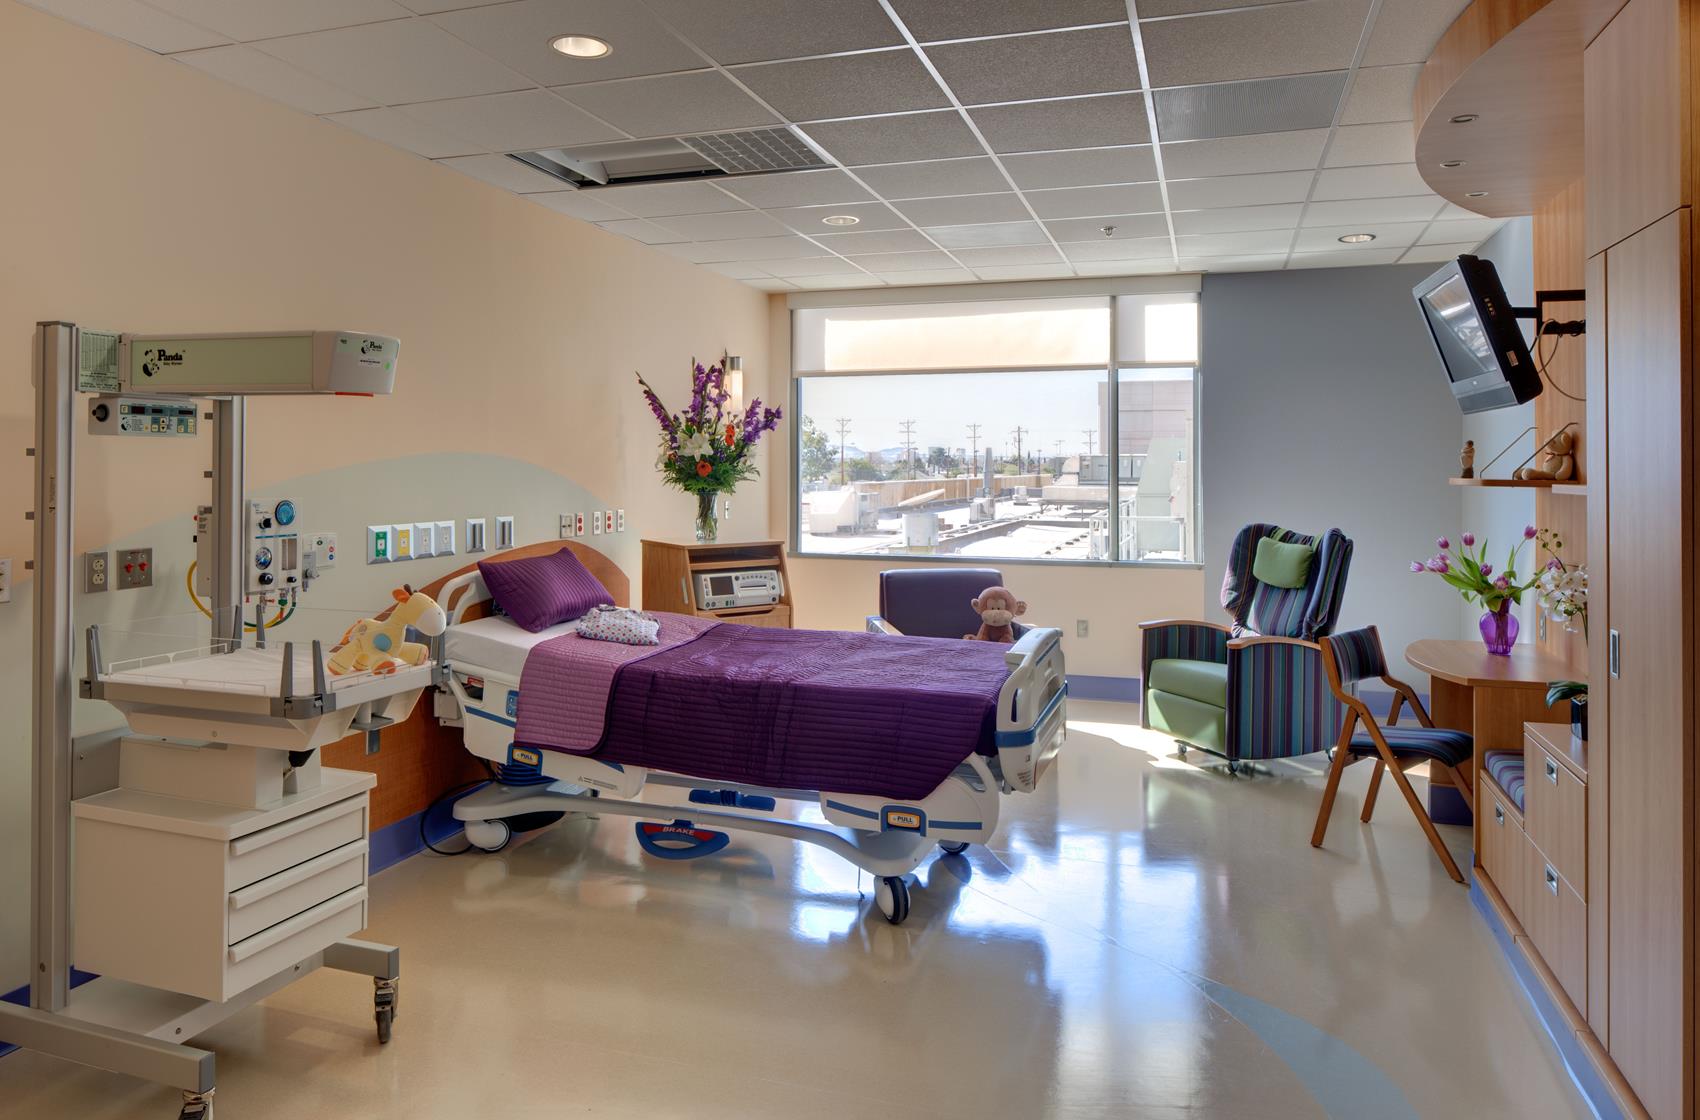 Patient room at El Paso Children's